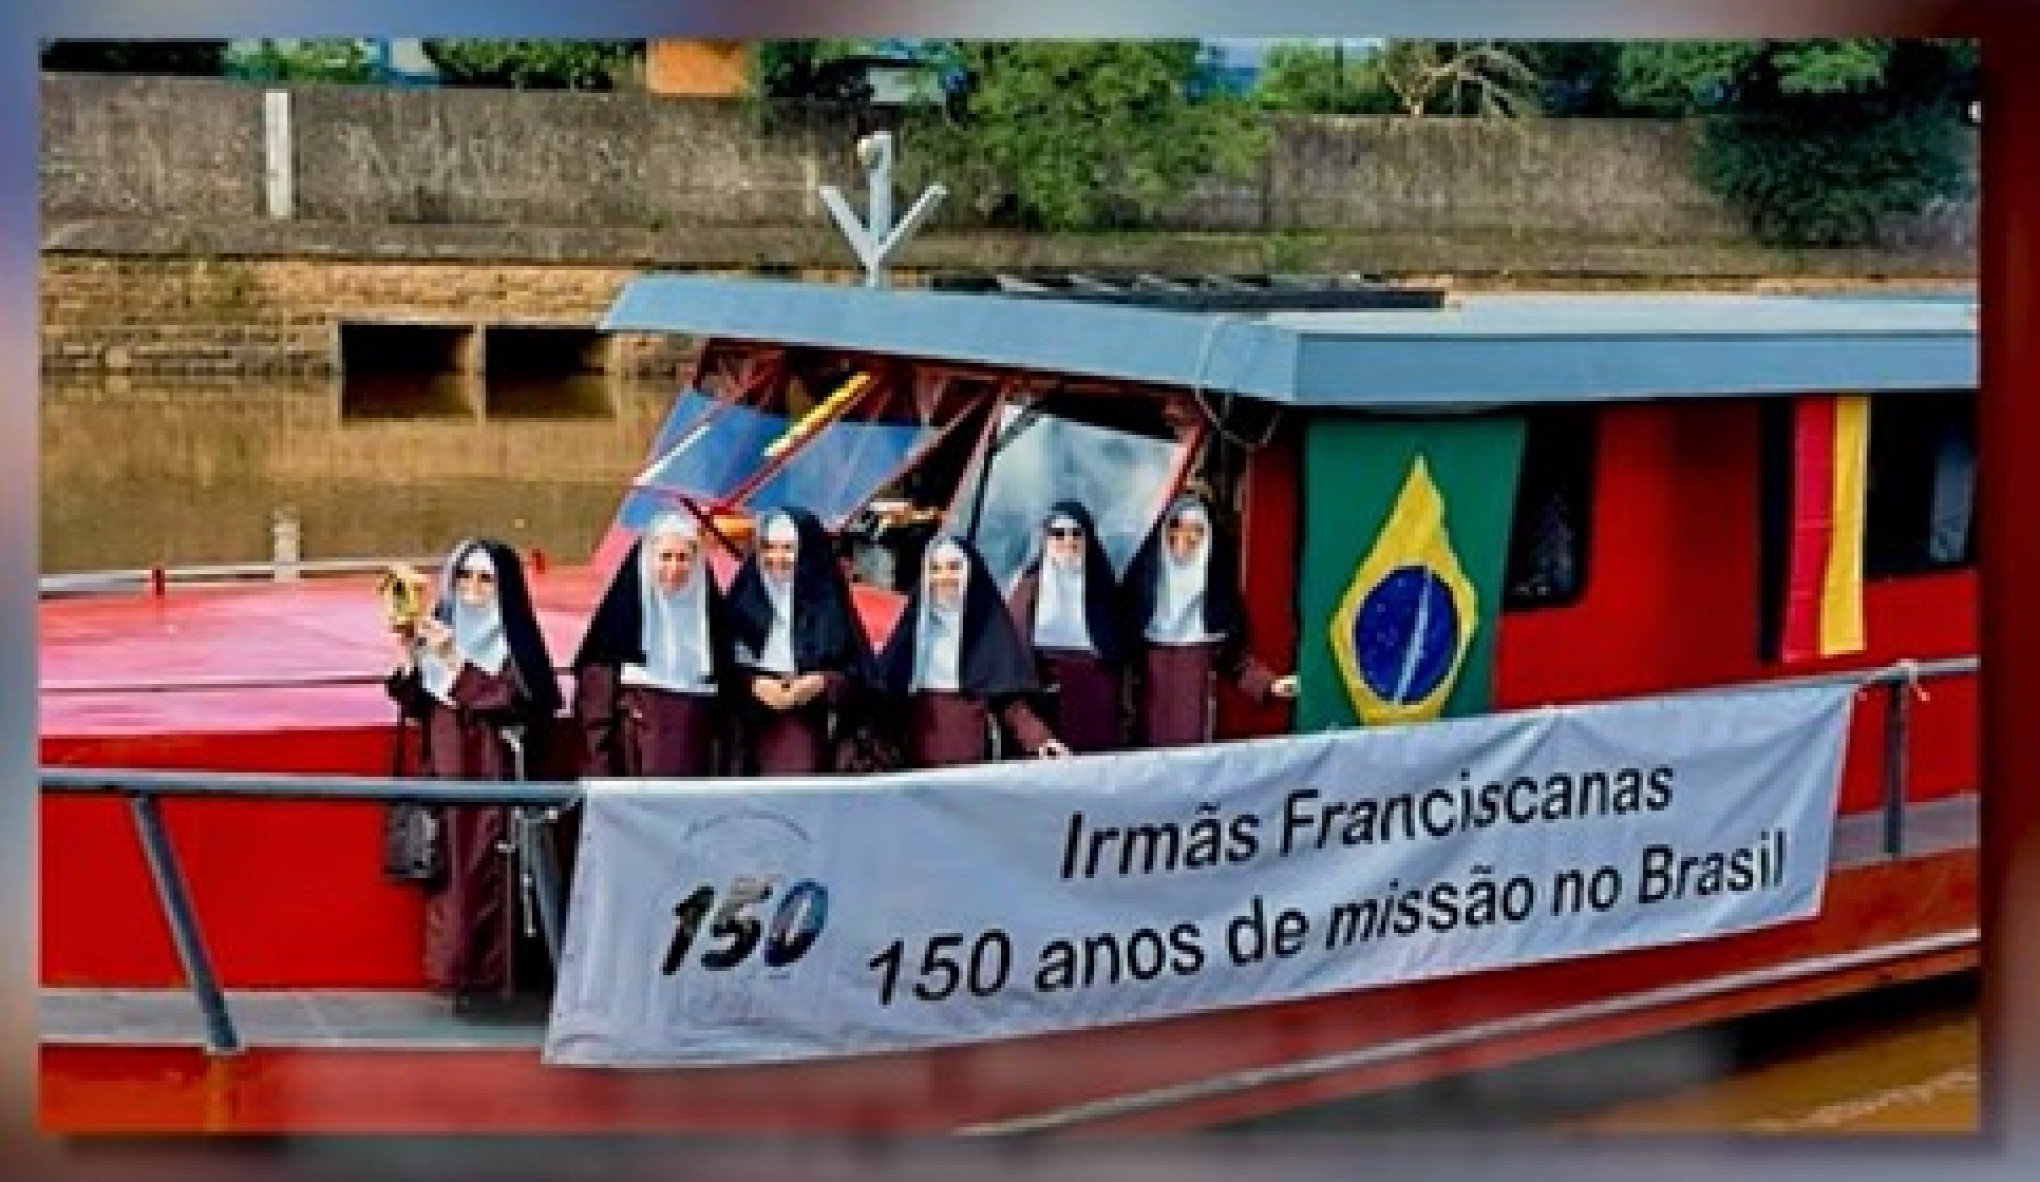 CURIOSIDADES DA IMIGRAÇÃO #44: Irmãs Franciscanas ficaram à deriva no Atlântico antes de chegarem à região, onde fundaram escola